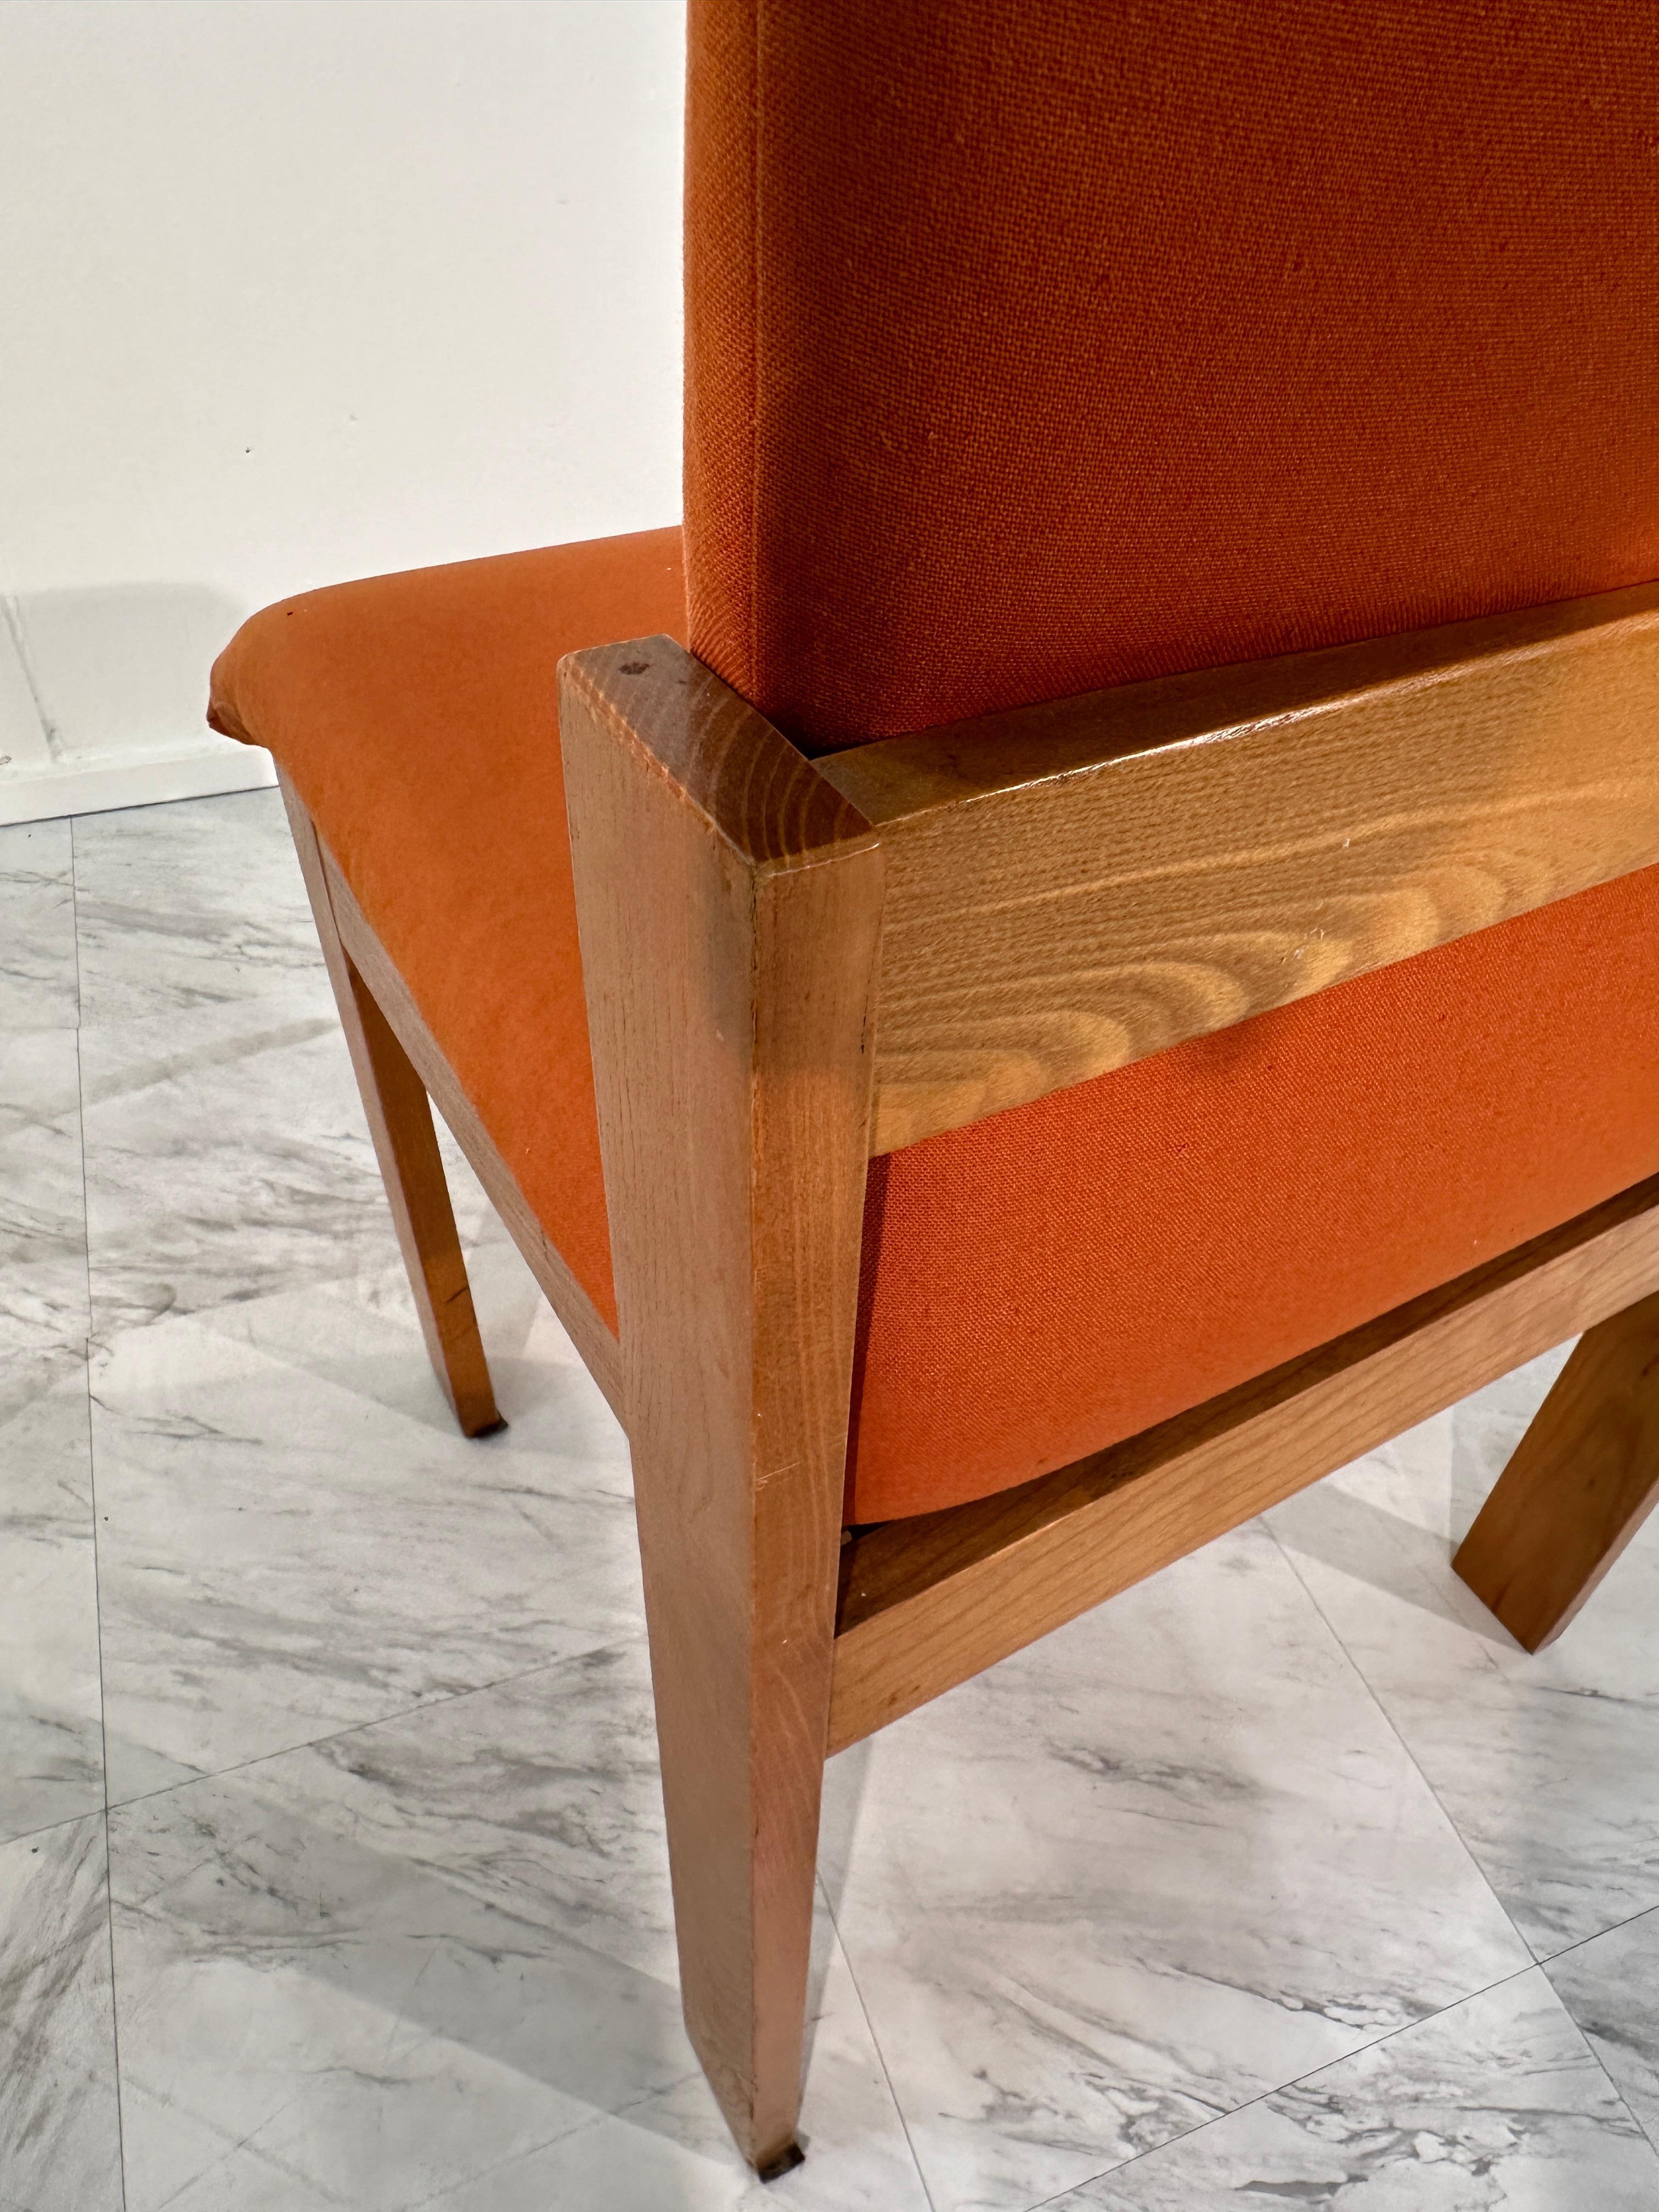 L'ensemble de 4 chaises de salle à manger en bois unique de F.lli Saporiti, datant des années 1960, offre un mélange saisissant de flair artistique et de design fonctionnel. Créées par le célèbre cabinet de design italien F.lli Saporiti au milieu du